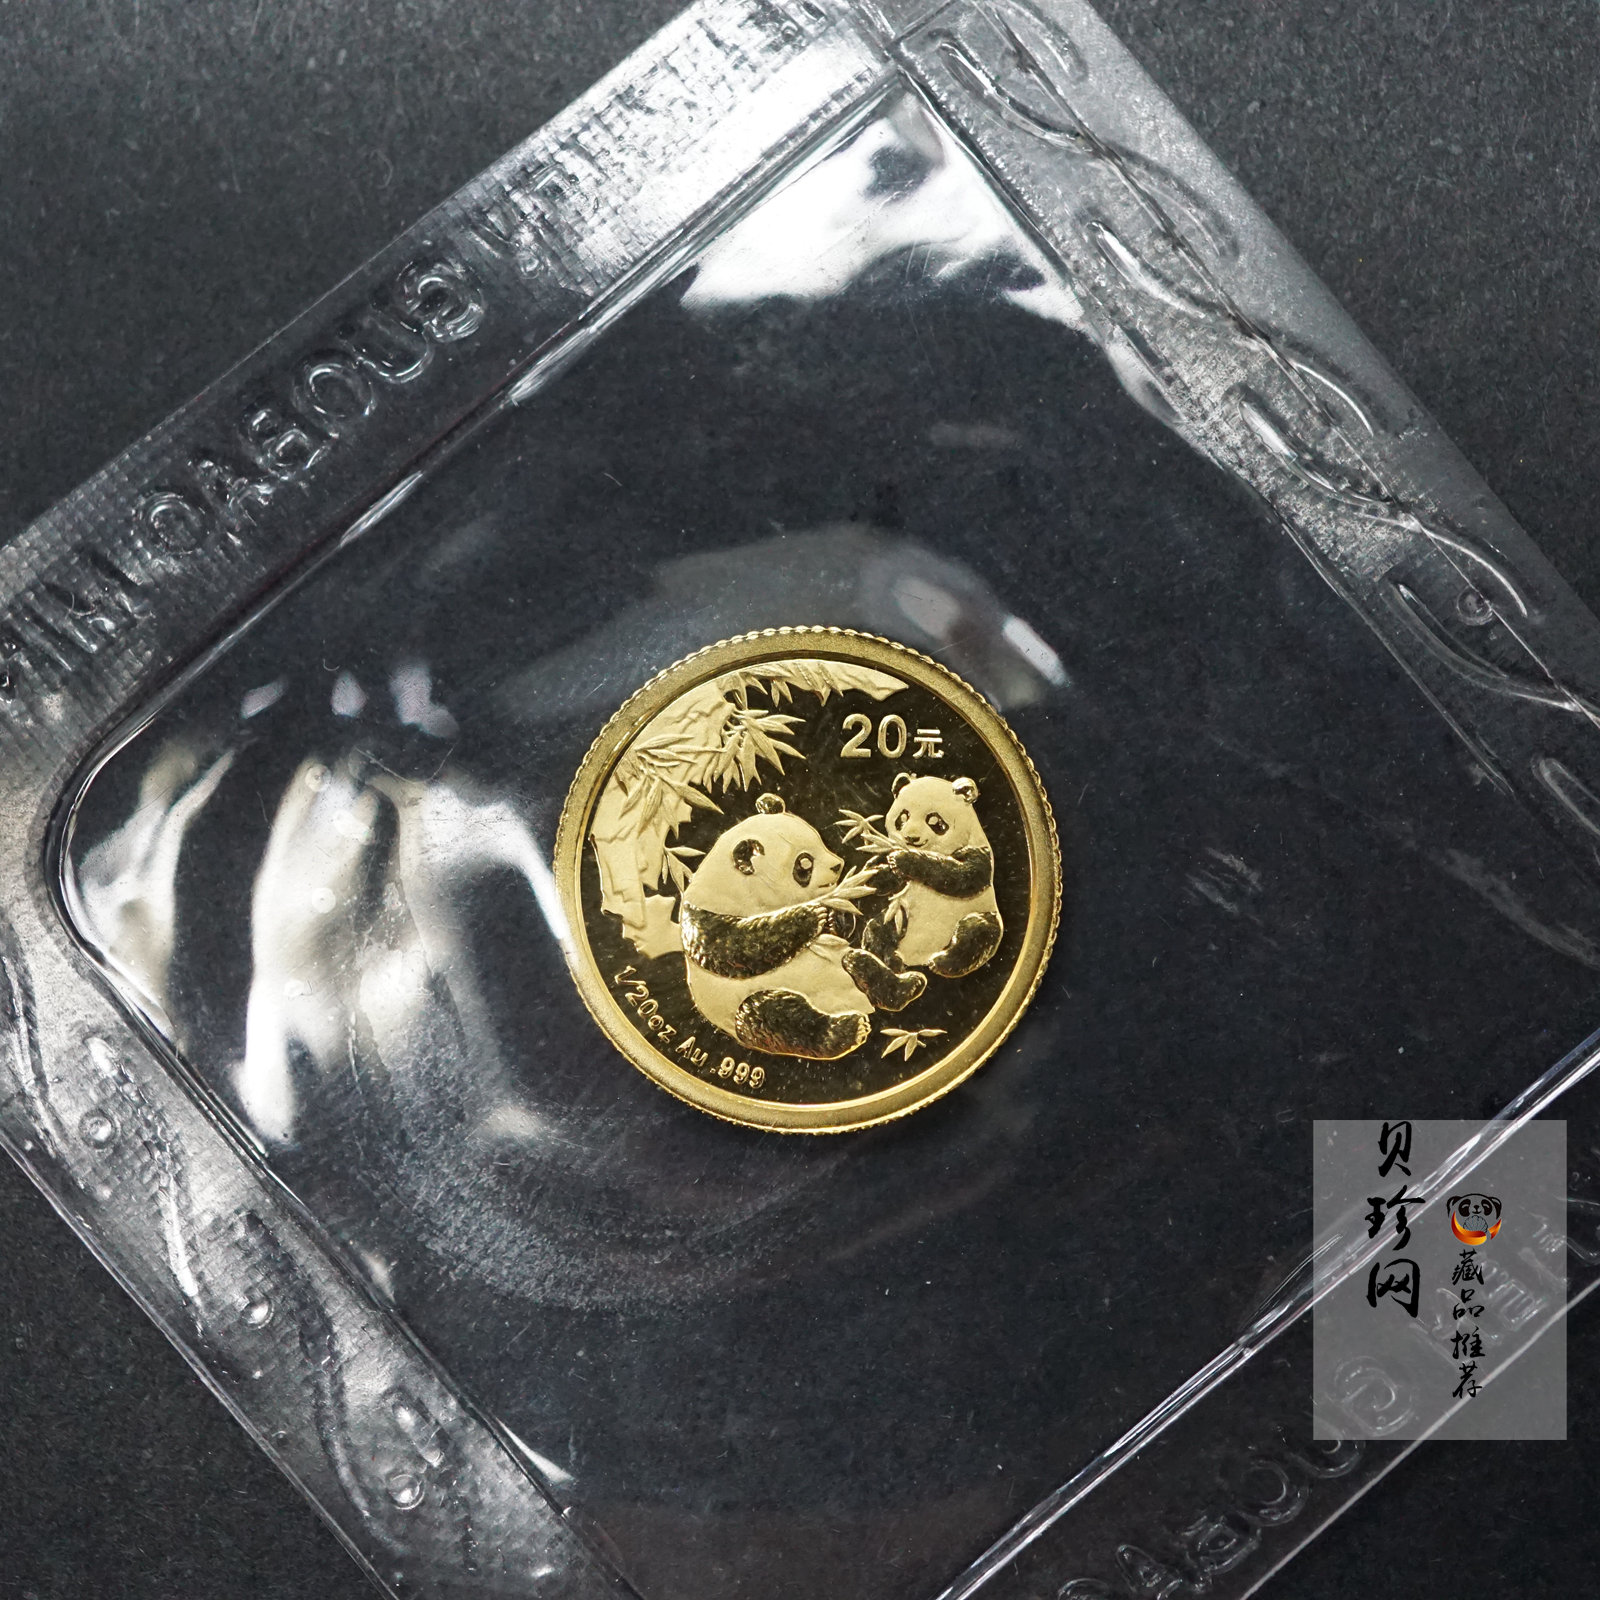 【060105】2006年熊猫1/20盎司普制金币